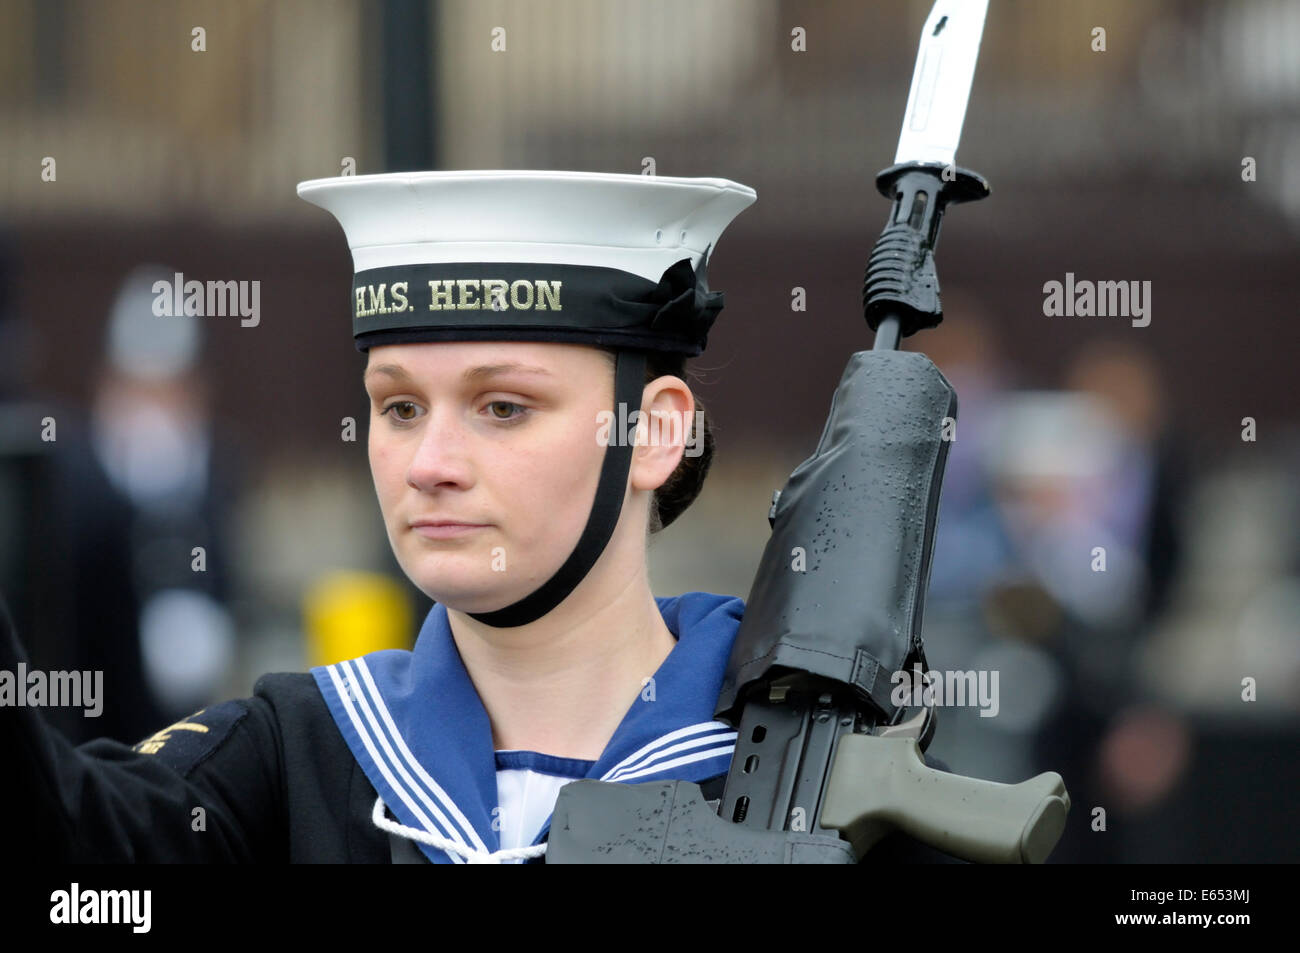 Londres, Angleterre, Royaume-Uni. Ouverture du Parlement de l'état 4 Juin 2014 - femme marin armé Banque D'Images